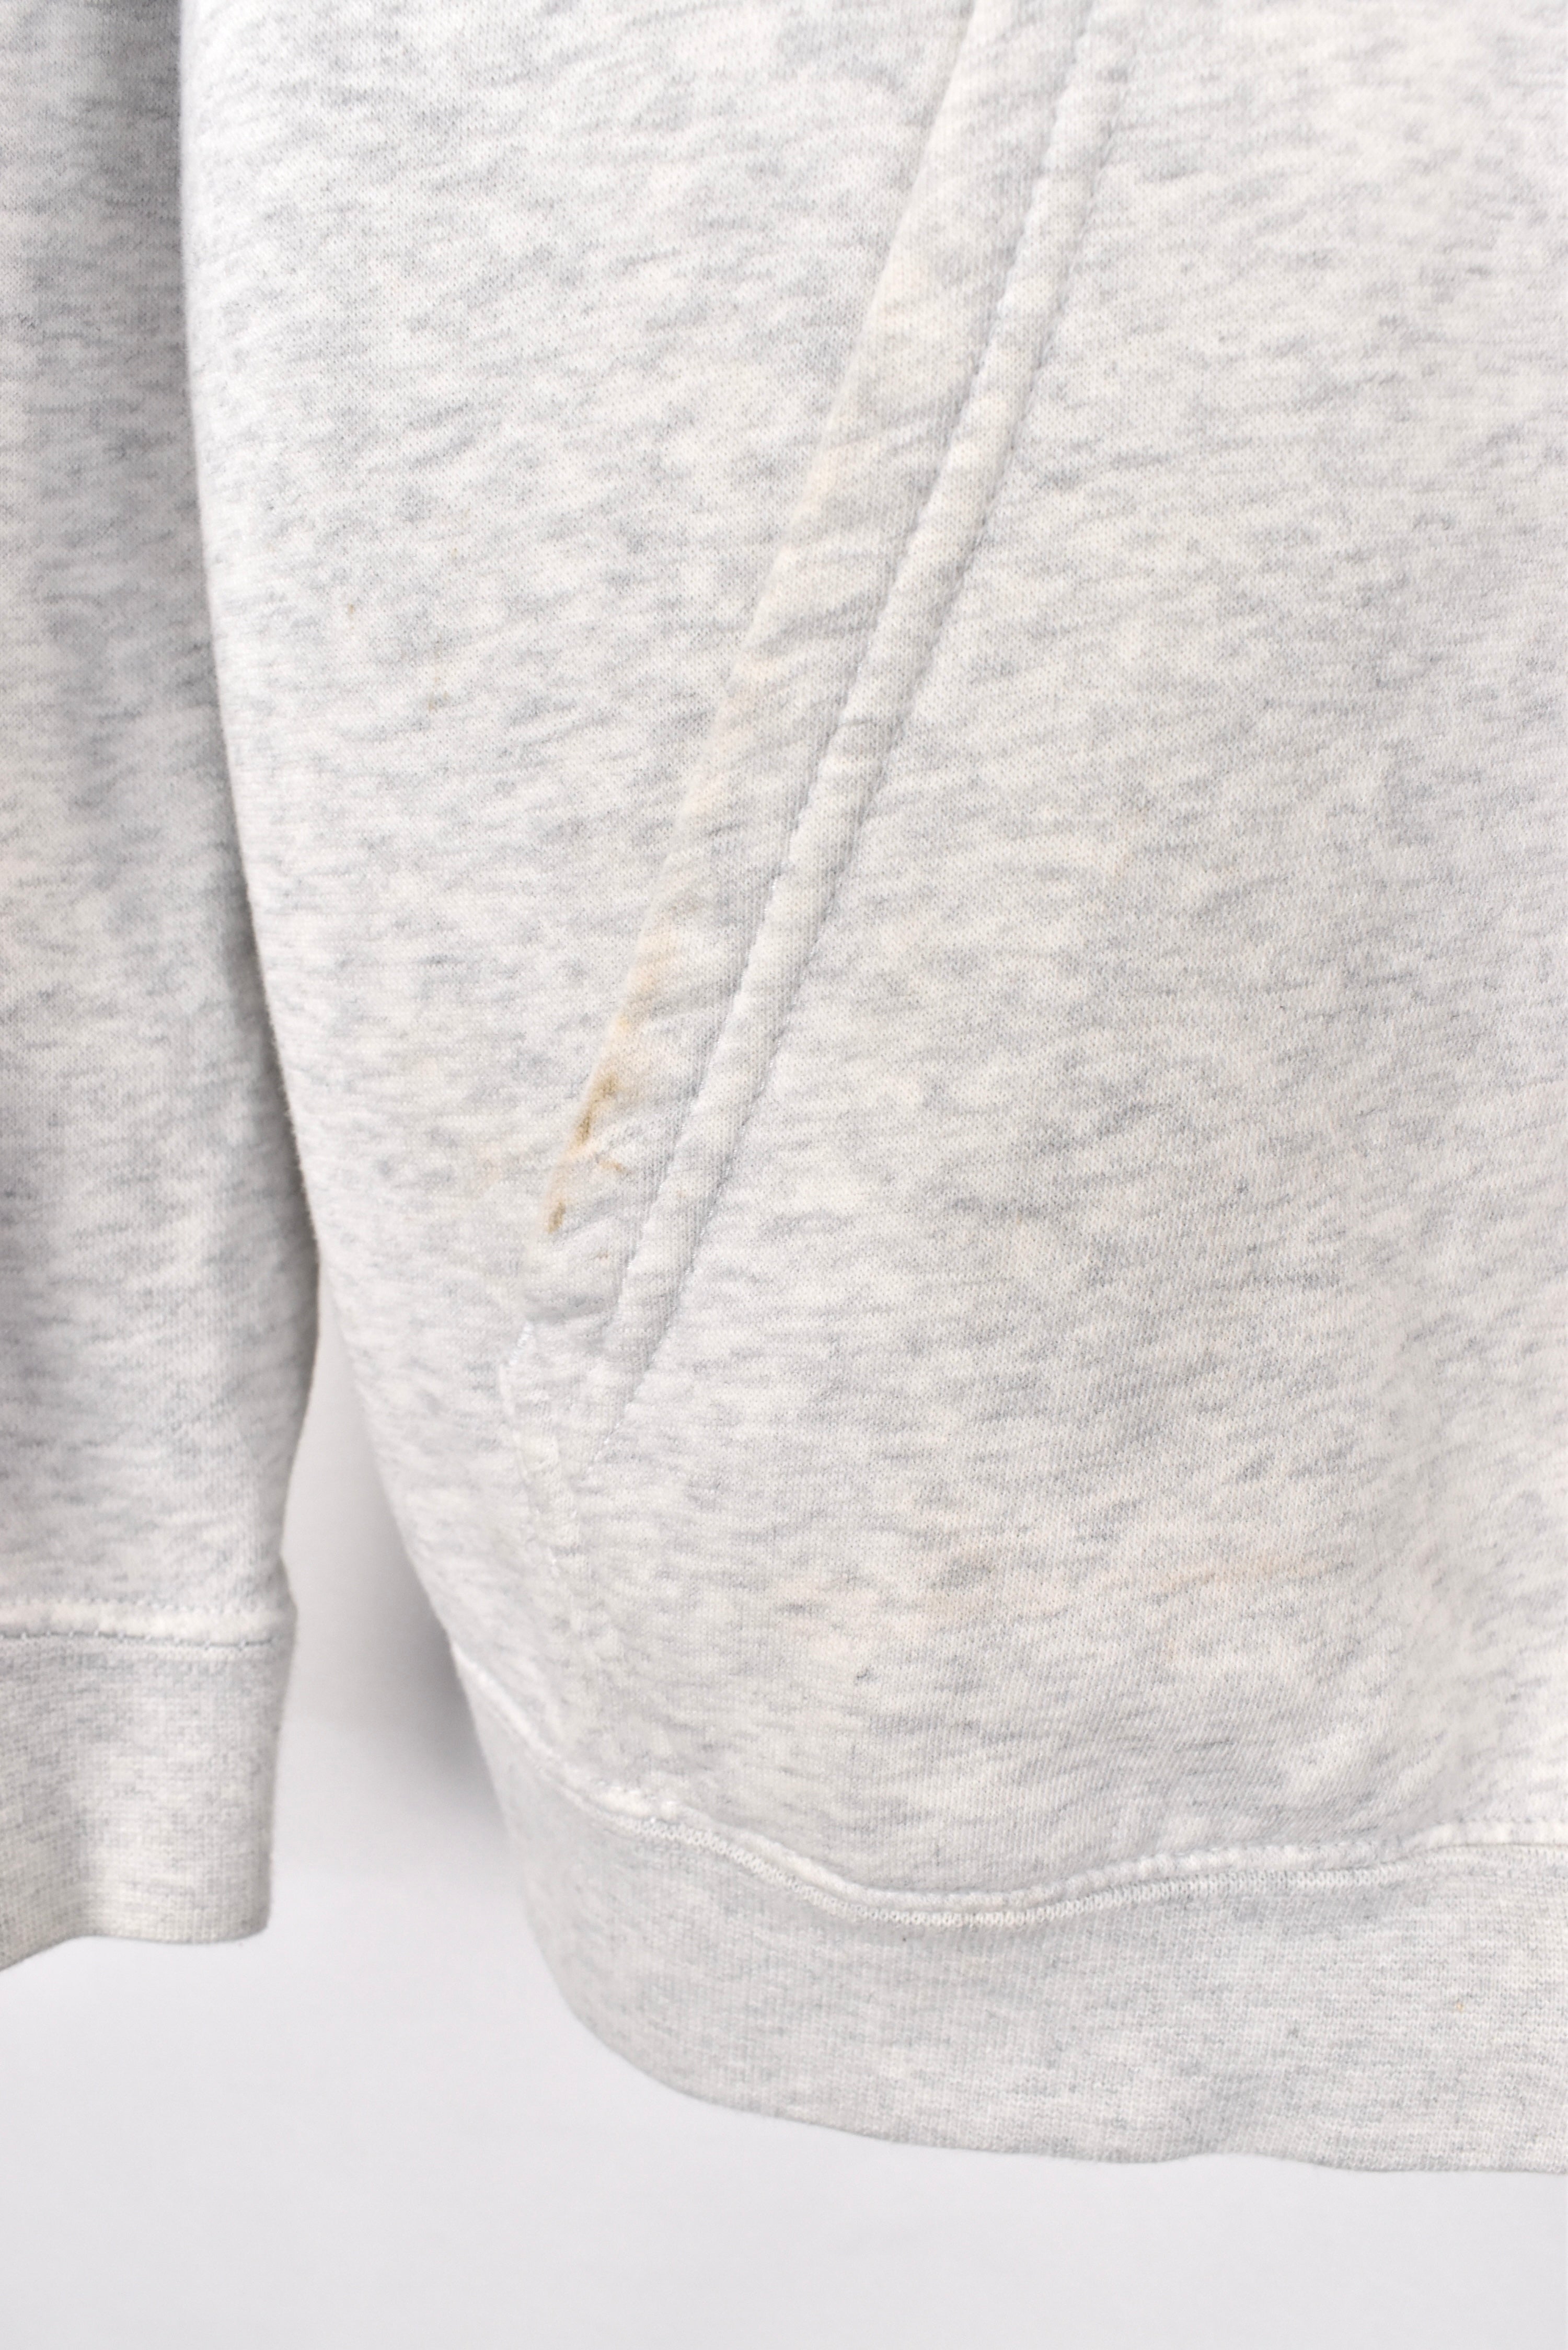 Vintage Nike hoodie, grey graphic sweatshirt - AU Large NIKE